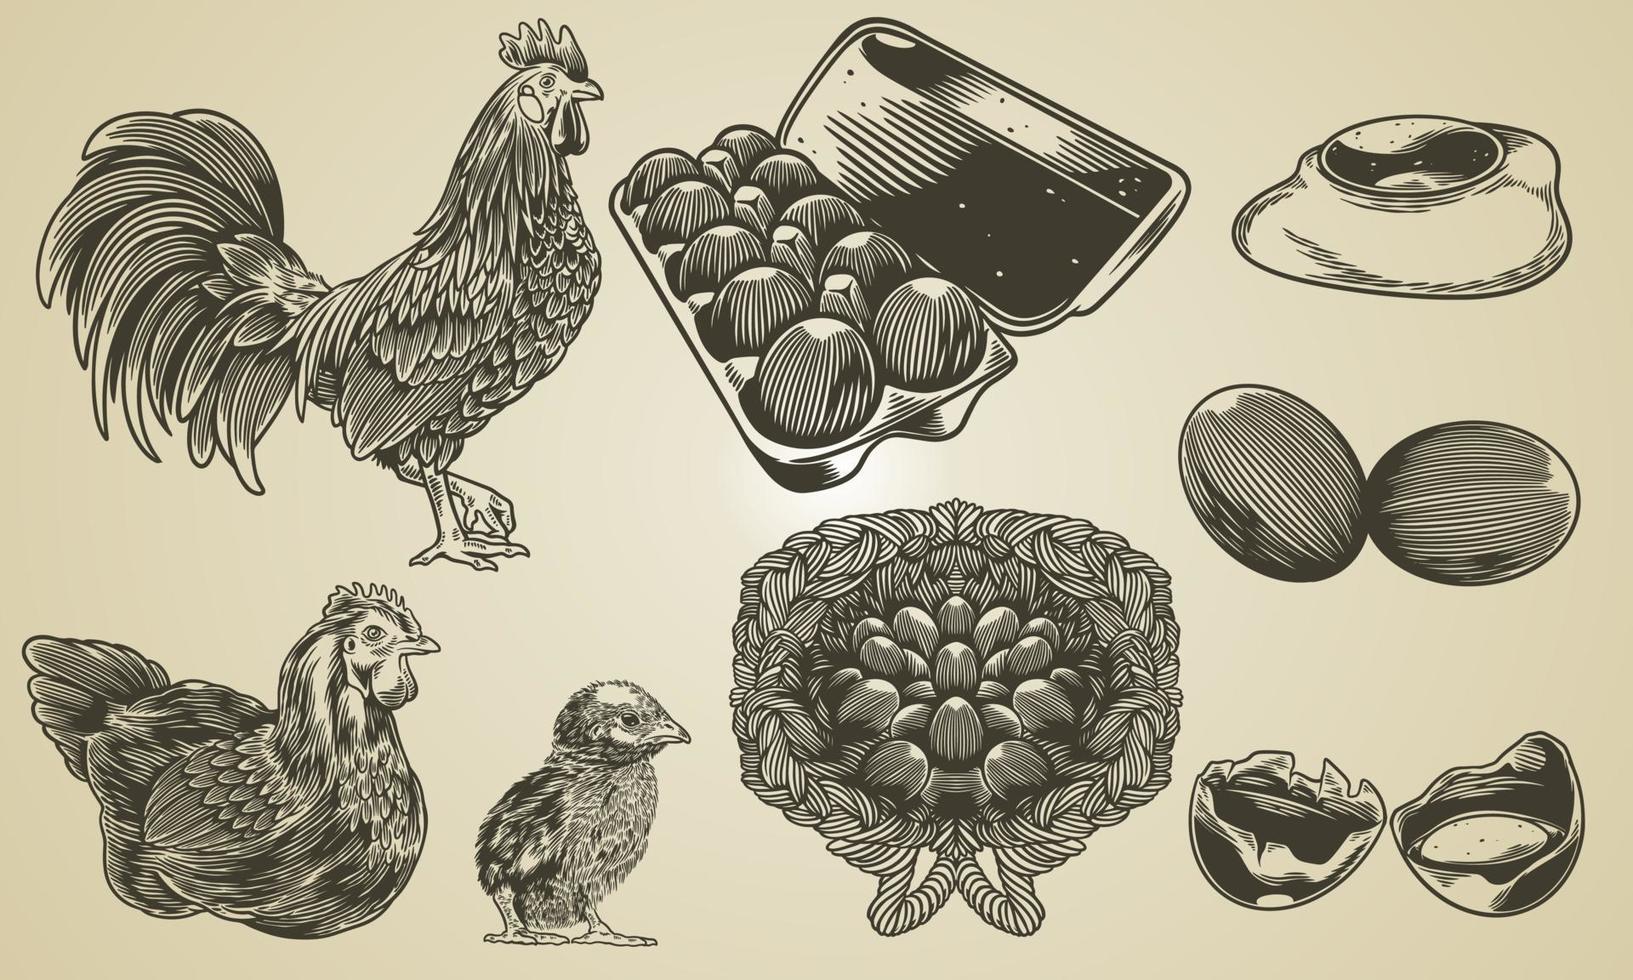 vector dibujado a mano vintage grabado pollo colección de elementos de diseño de la granja. ilustraciones de tostador, gallina, pollitos, huevo envasado, huevo frito, huevo quebrado en estilo retro boceto o grabado